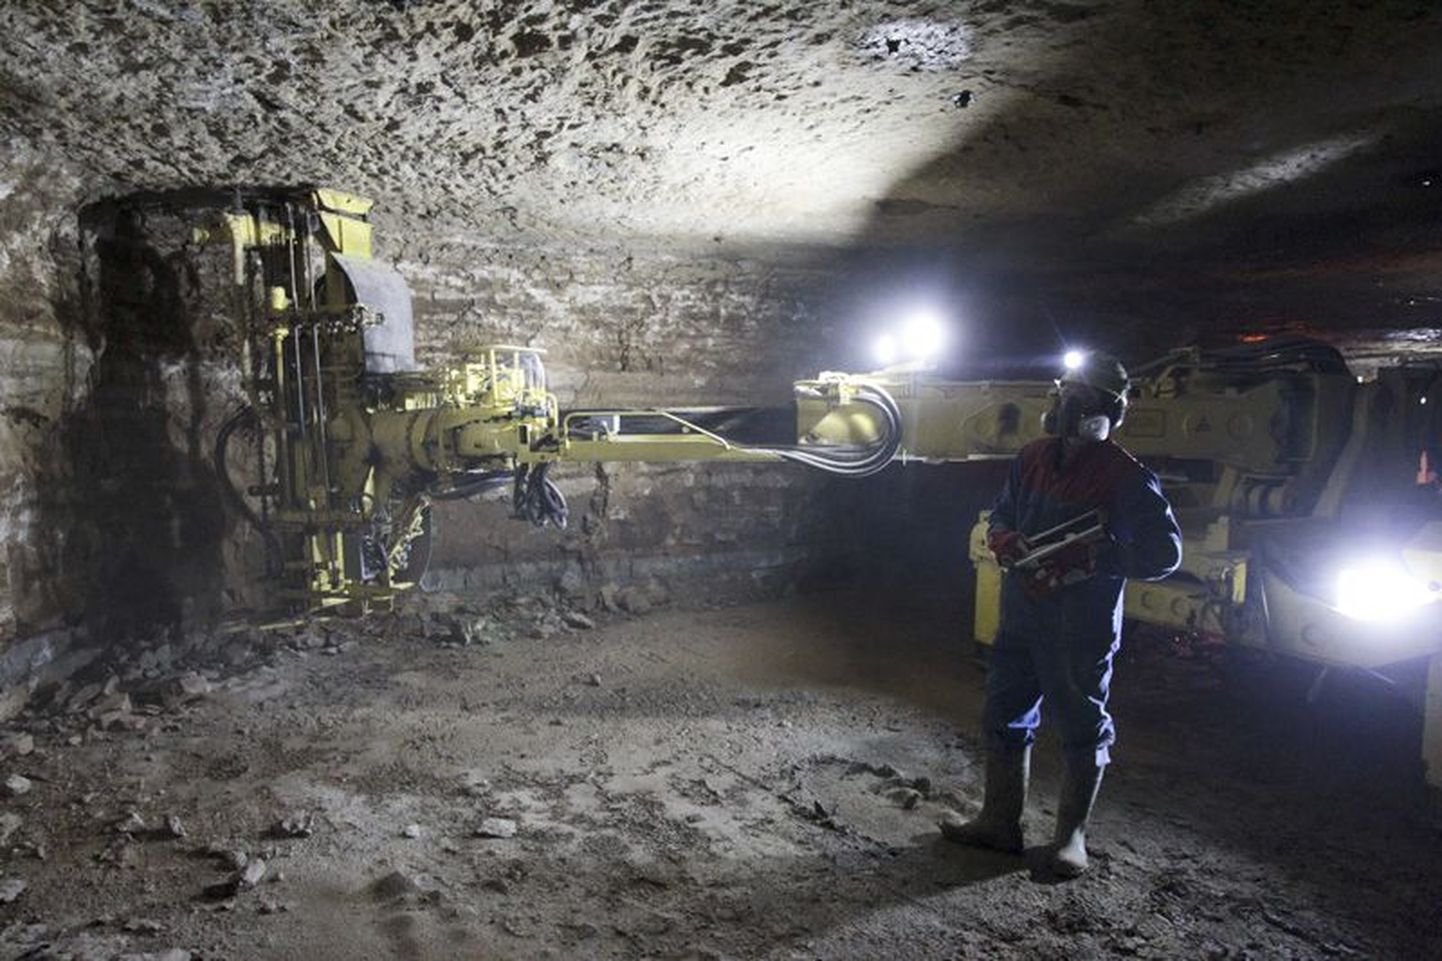 Kuigi inimesed pelgavad kaevanduste rajamist, on ühinemislepingus kirjas, et Rägavere vald jääb kaevanduste vabaks.